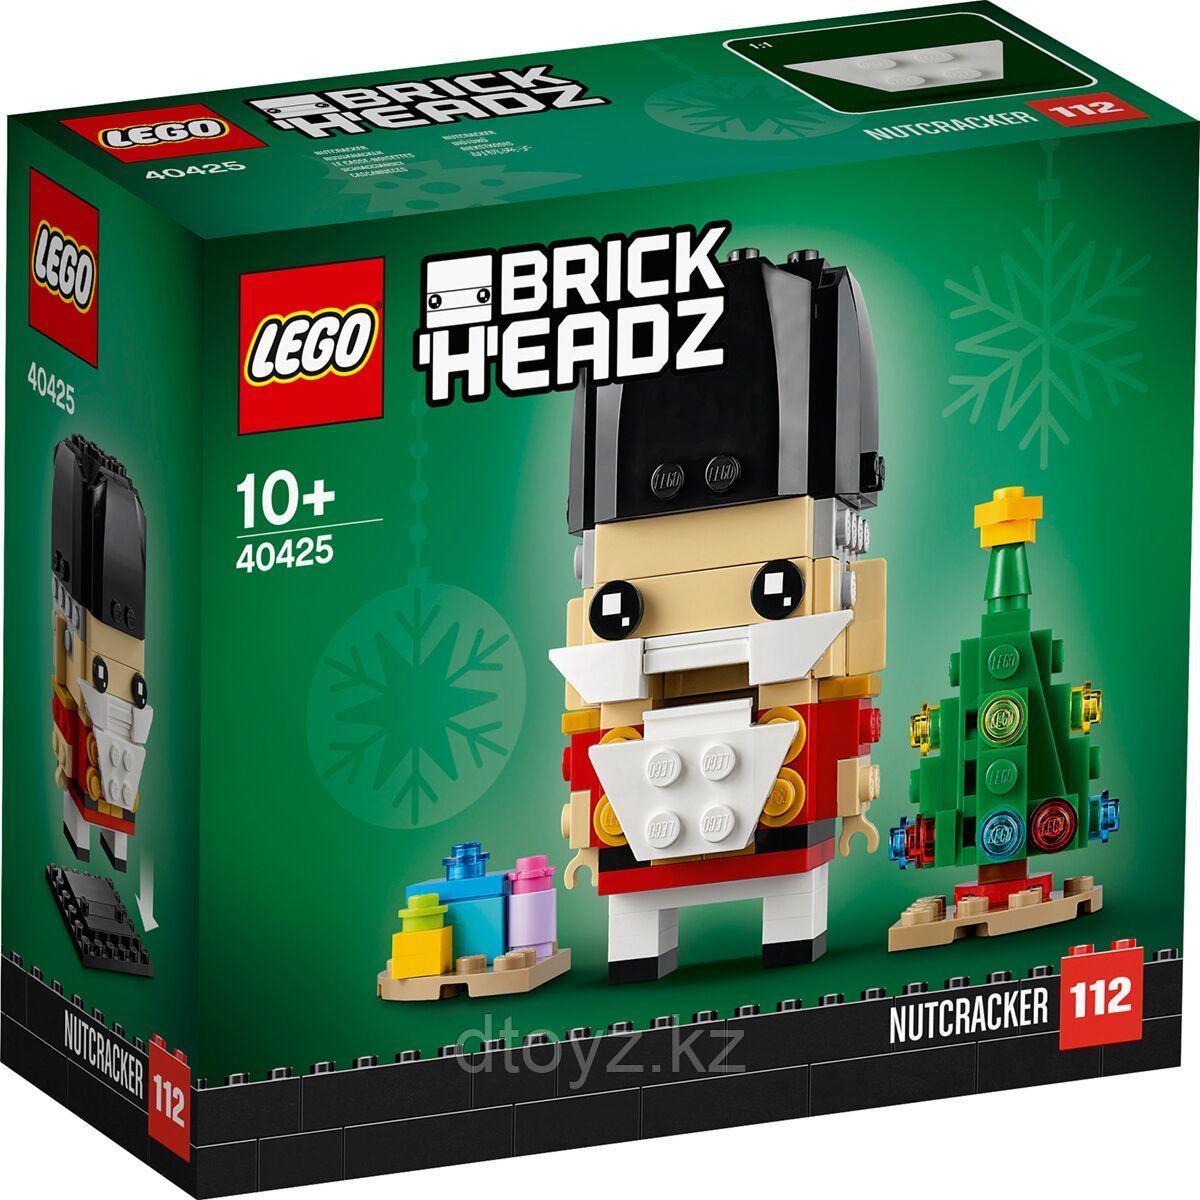 LEGO «Щелкунчик» Brick Headz 40425